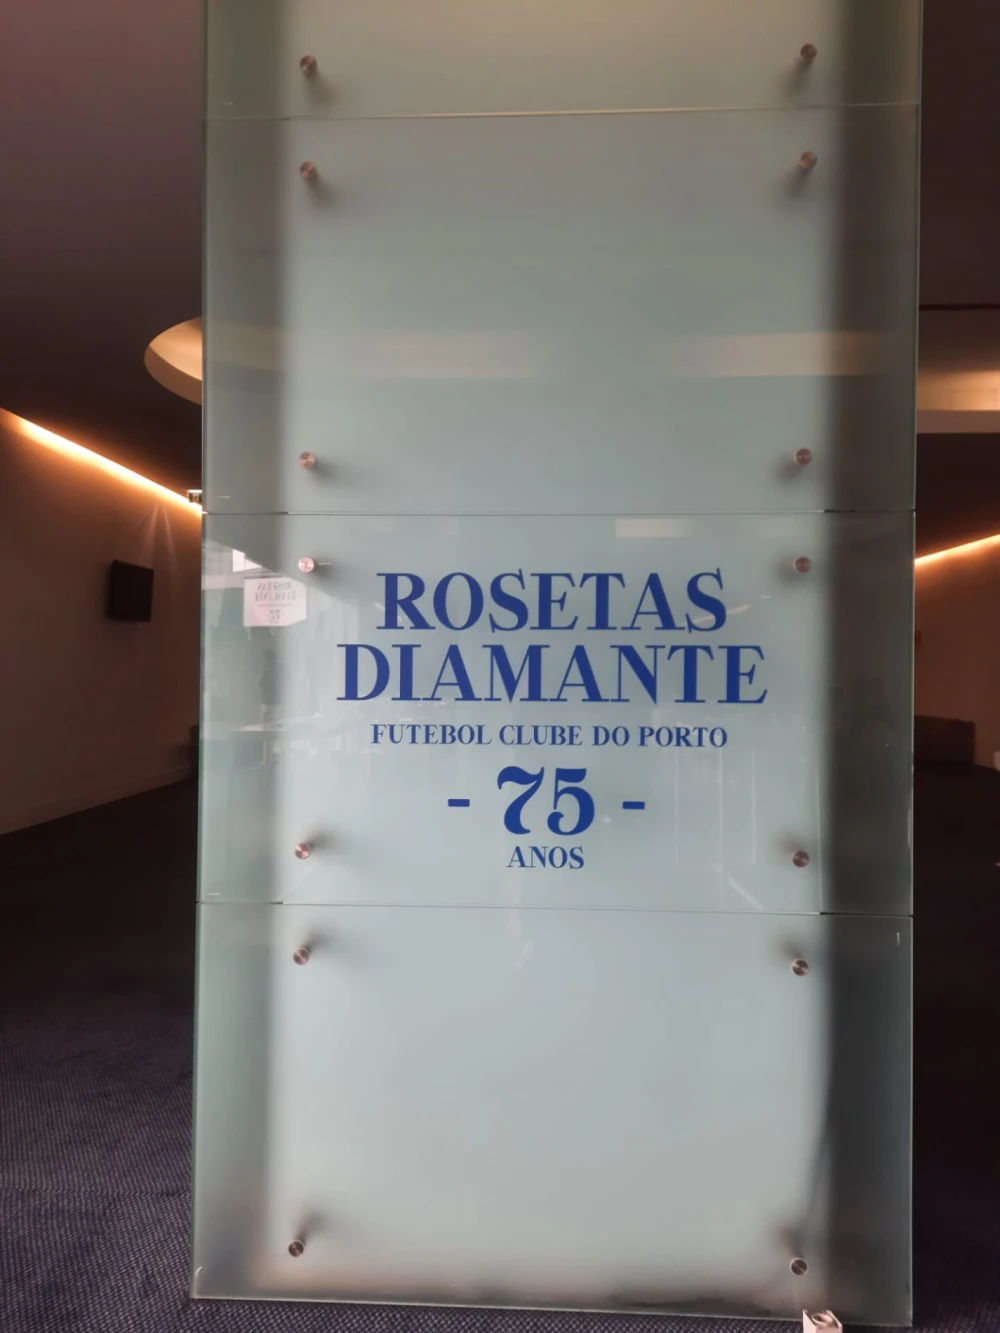 Rosetas Diamante 75 anos - Futebol Clube Porto